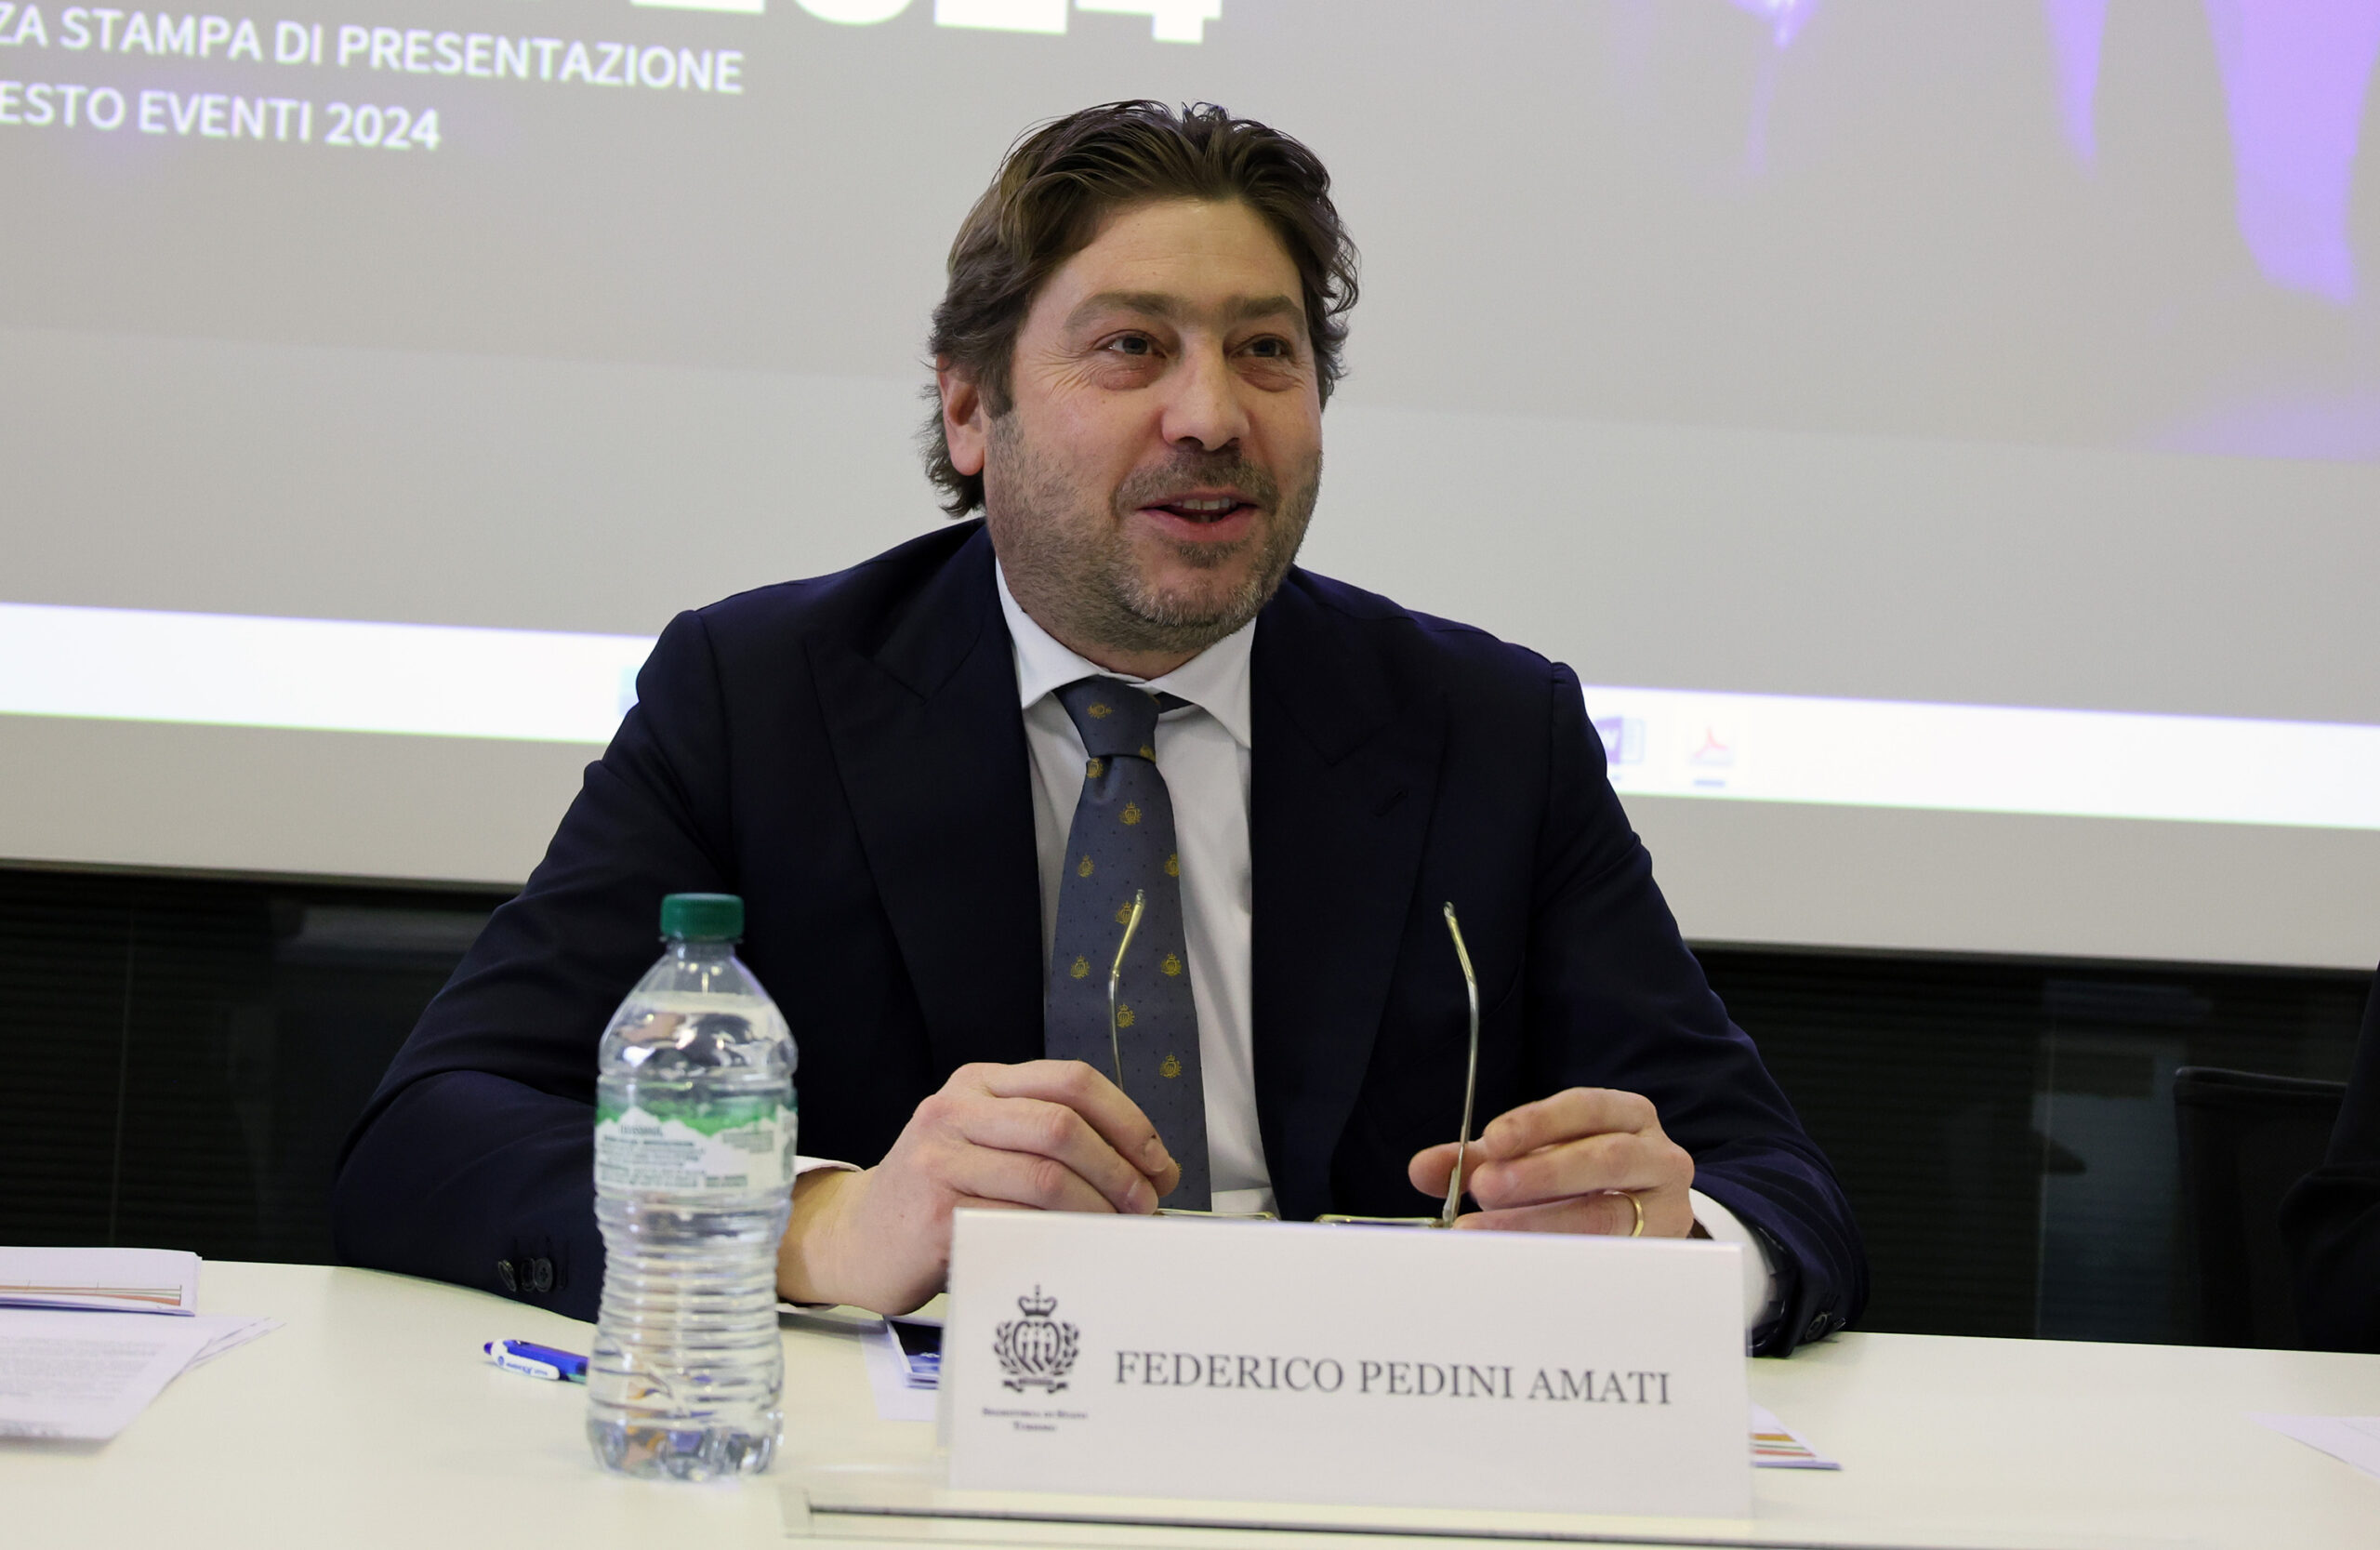 Turismo a San Marino, il segretario Pedini Amati: “In 4 anni di attività abbiamo restituito oltre 1 milione di euro alle casse dello Stato”